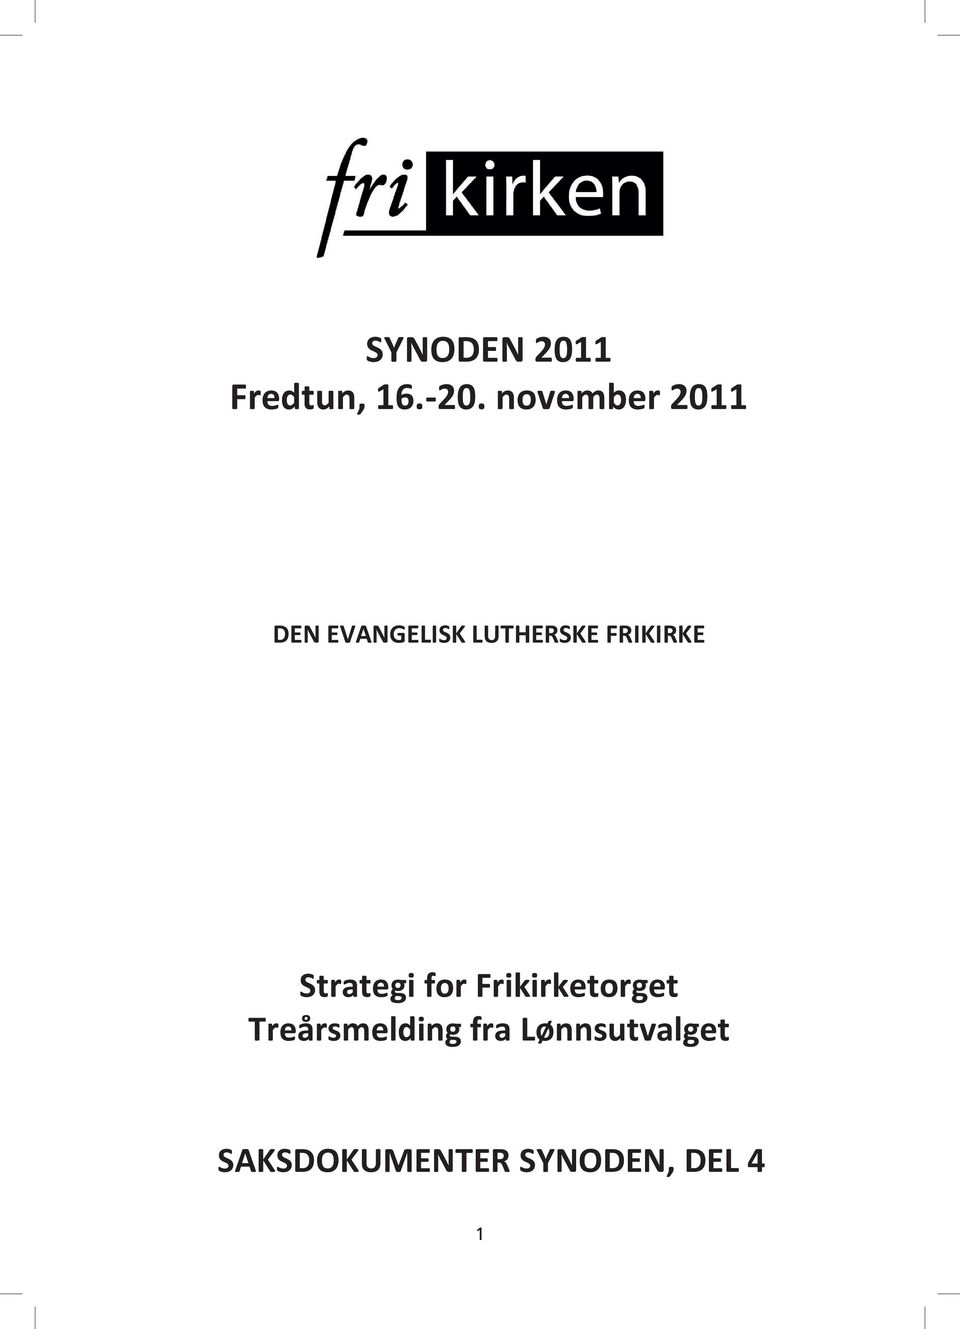 FRIKIRKE Strategi for Frikirketorget